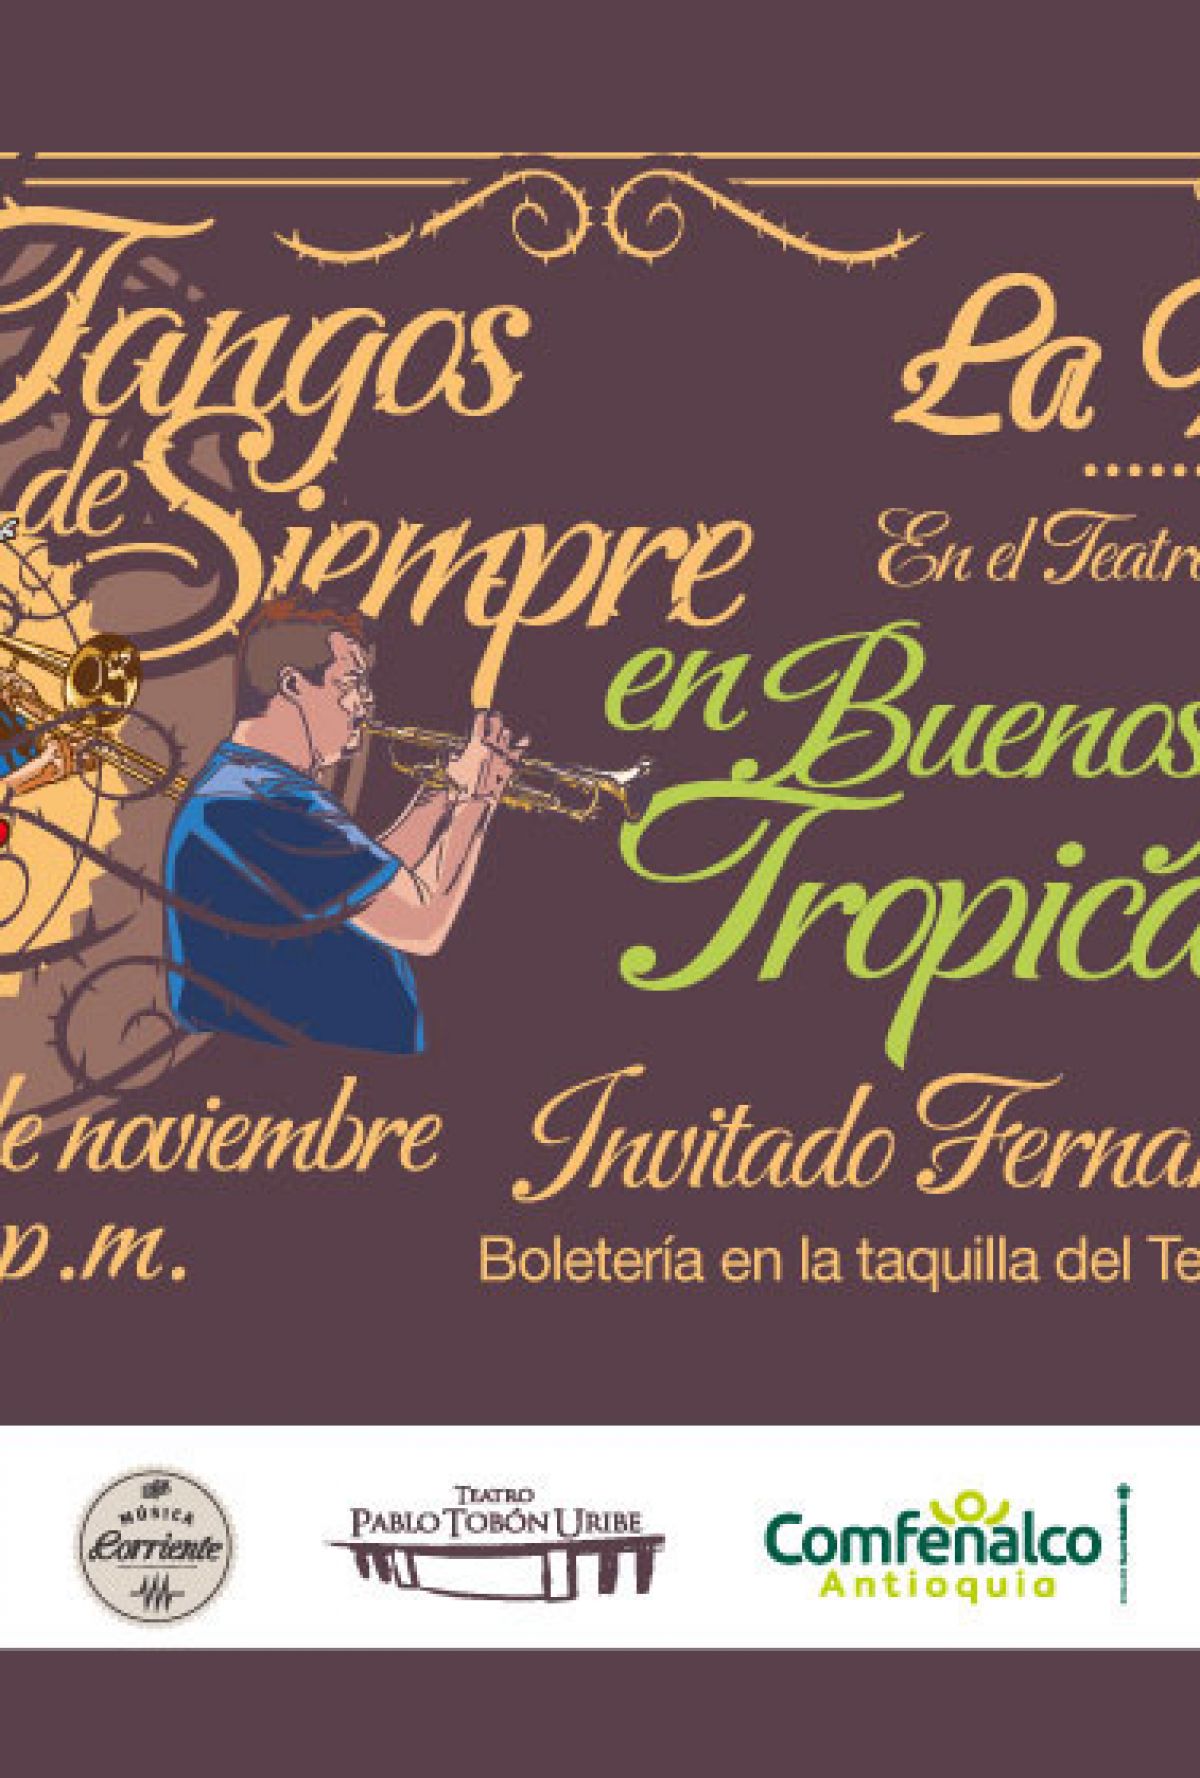 Tangos de Siempre en Buenos Aires Tropicales